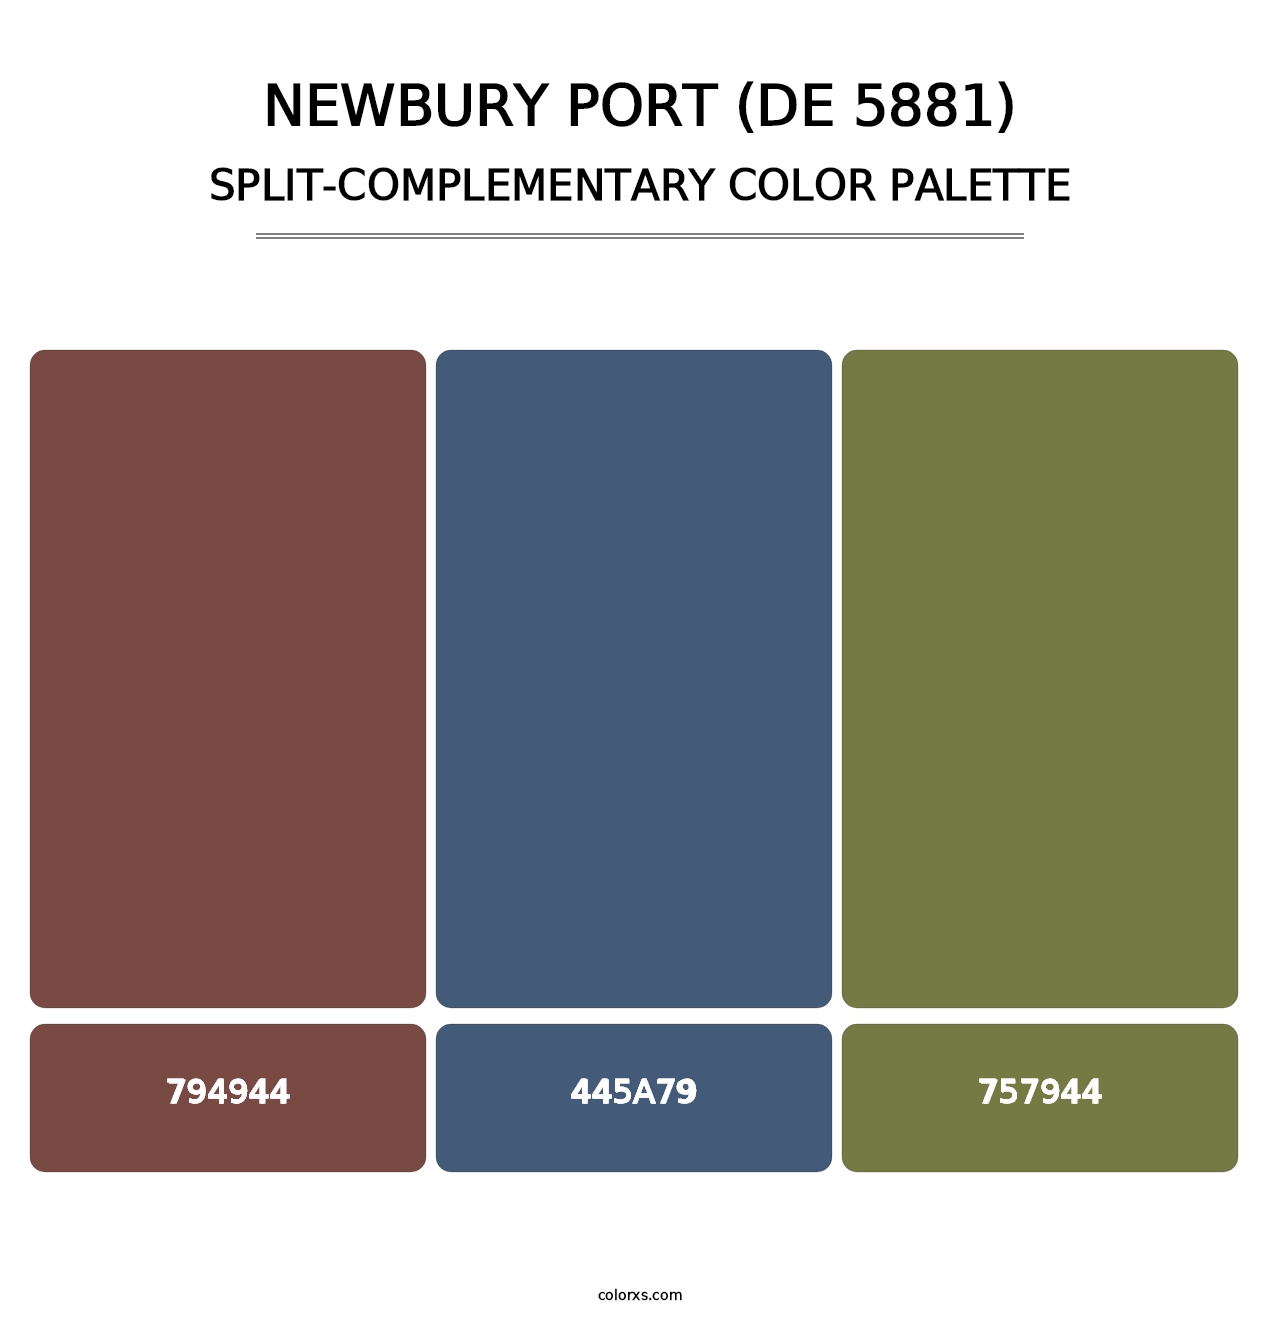 Newbury Port (DE 5881) - Split-Complementary Color Palette